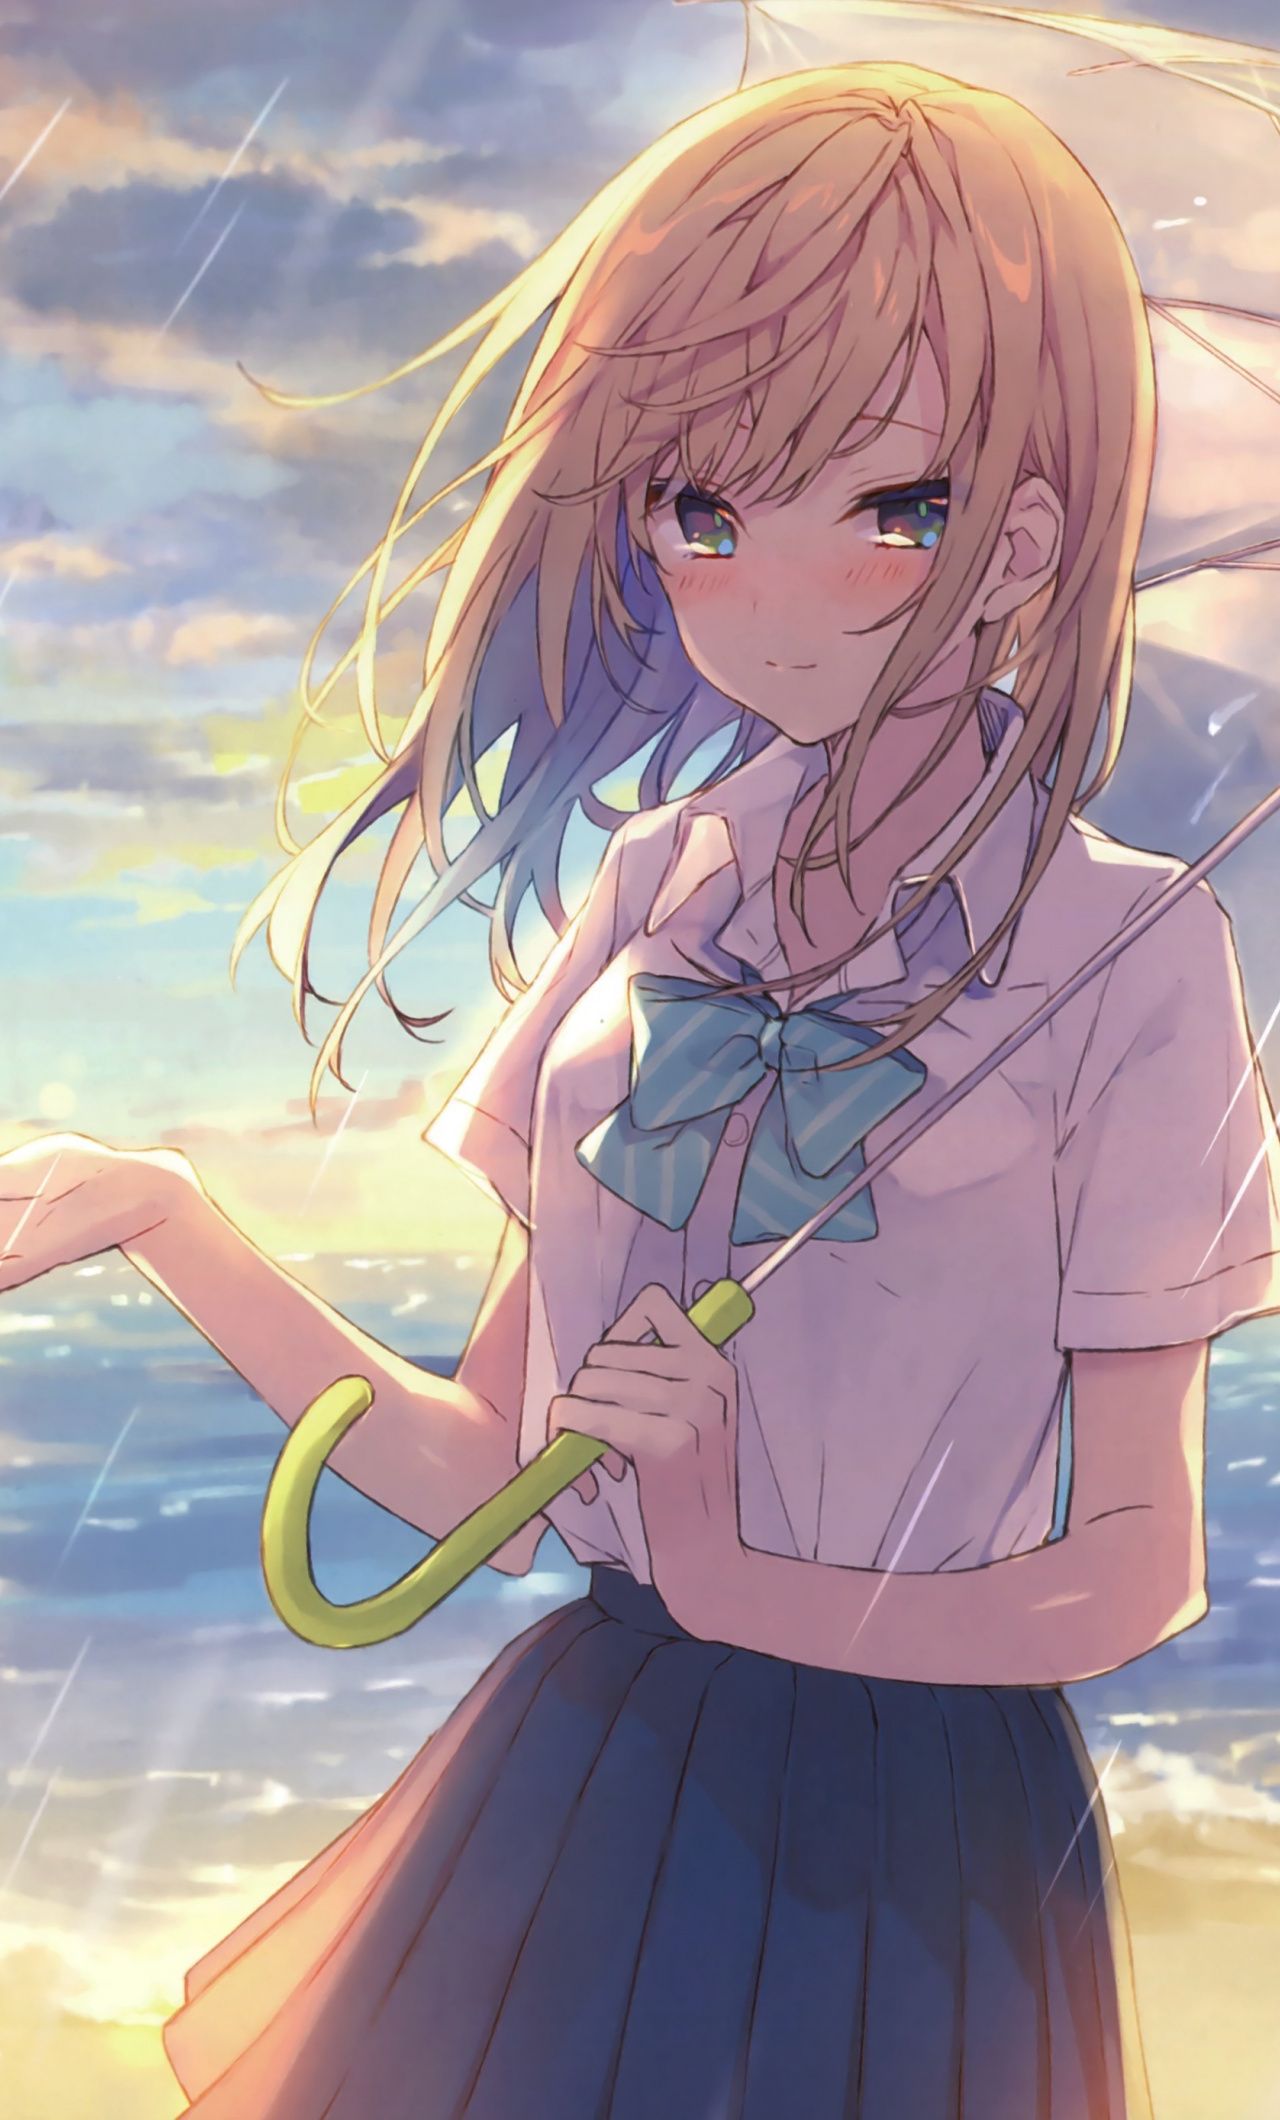 Wallpaper Outdoor, Cute Anime Girl, Rain, Umbrella